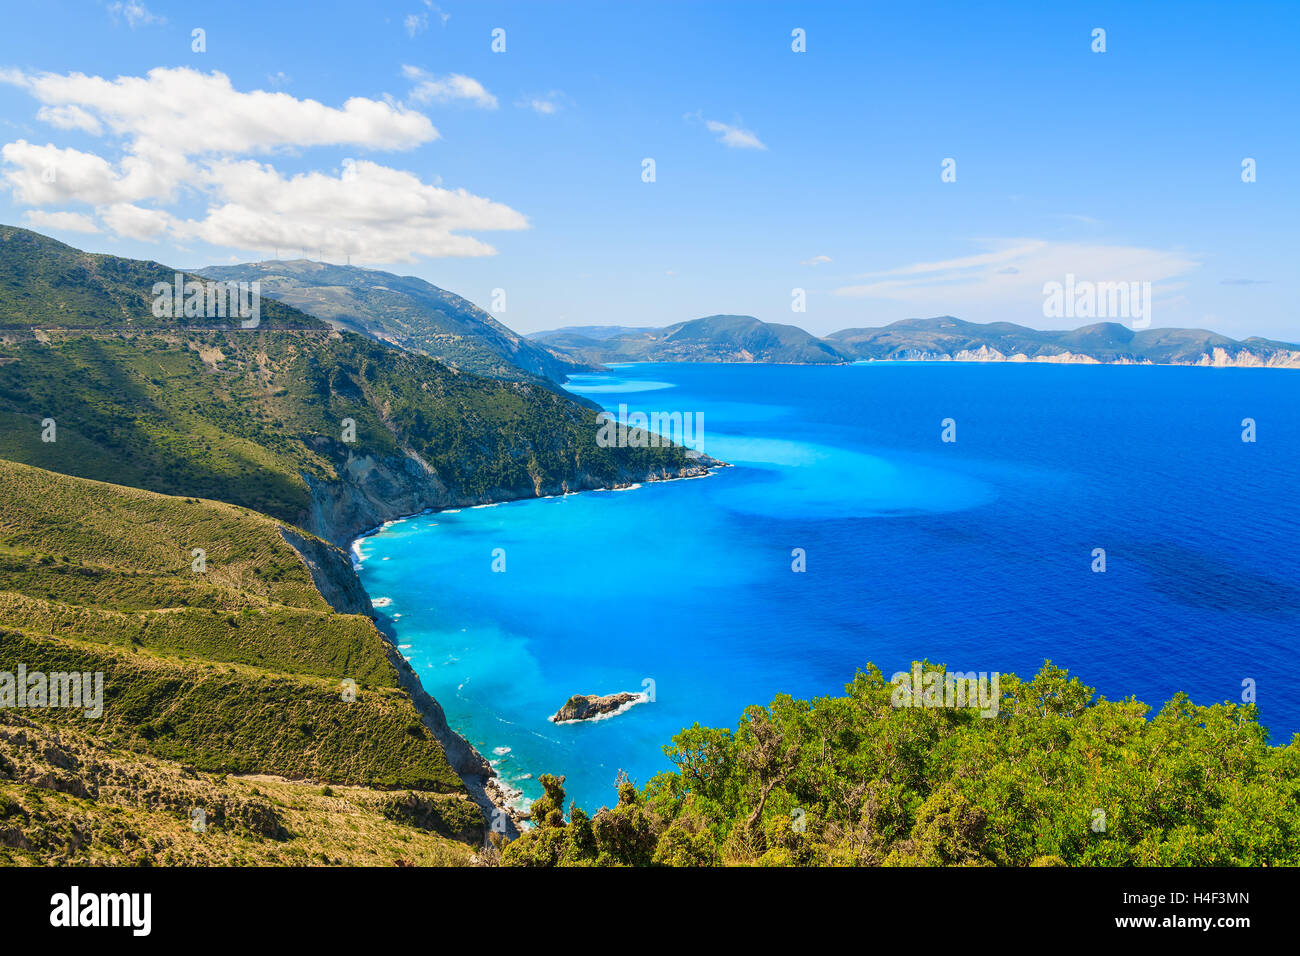 Bleu de la mer et les montagnes sur la côte de l'île de Céphalonie, près de la ville d'Assos, Grèce Banque D'Images